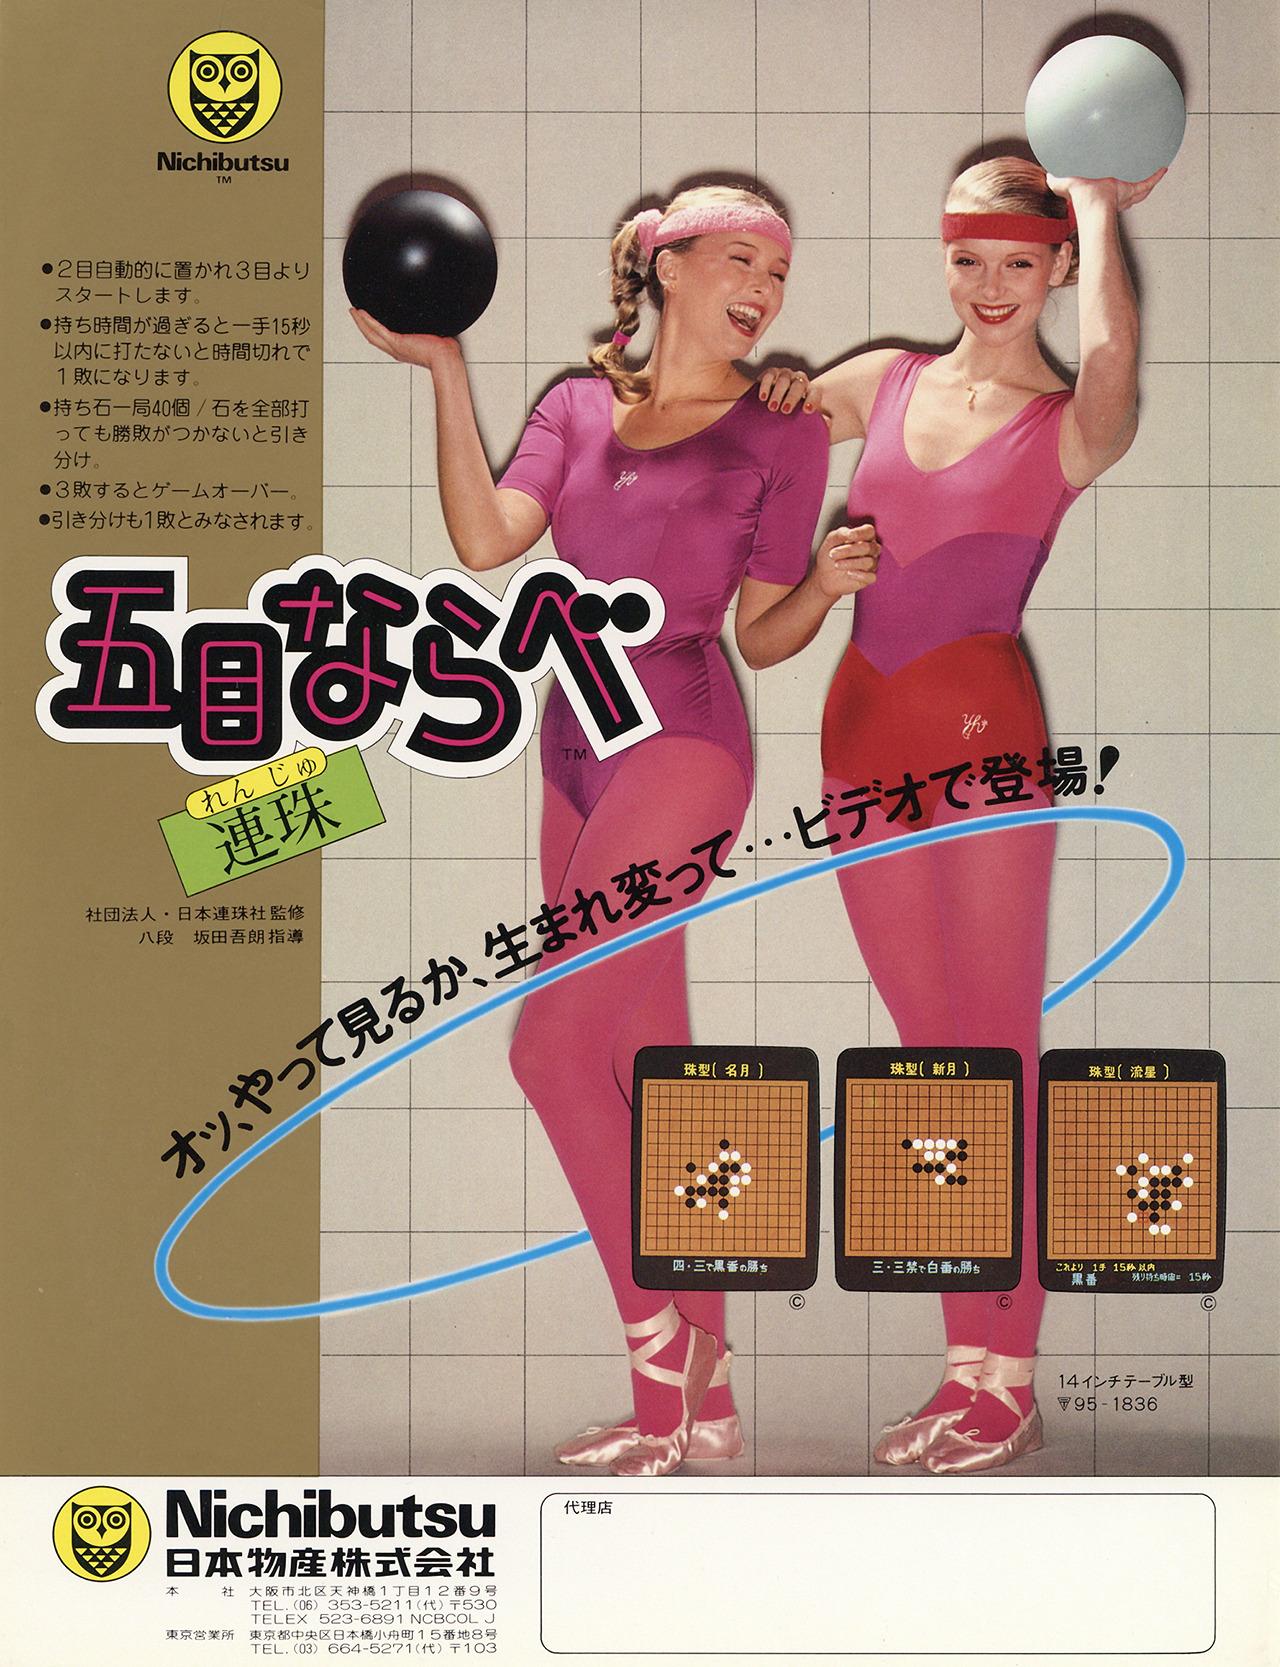 Les Jeux Vidéo japonais des Annonces à partir des années 1980